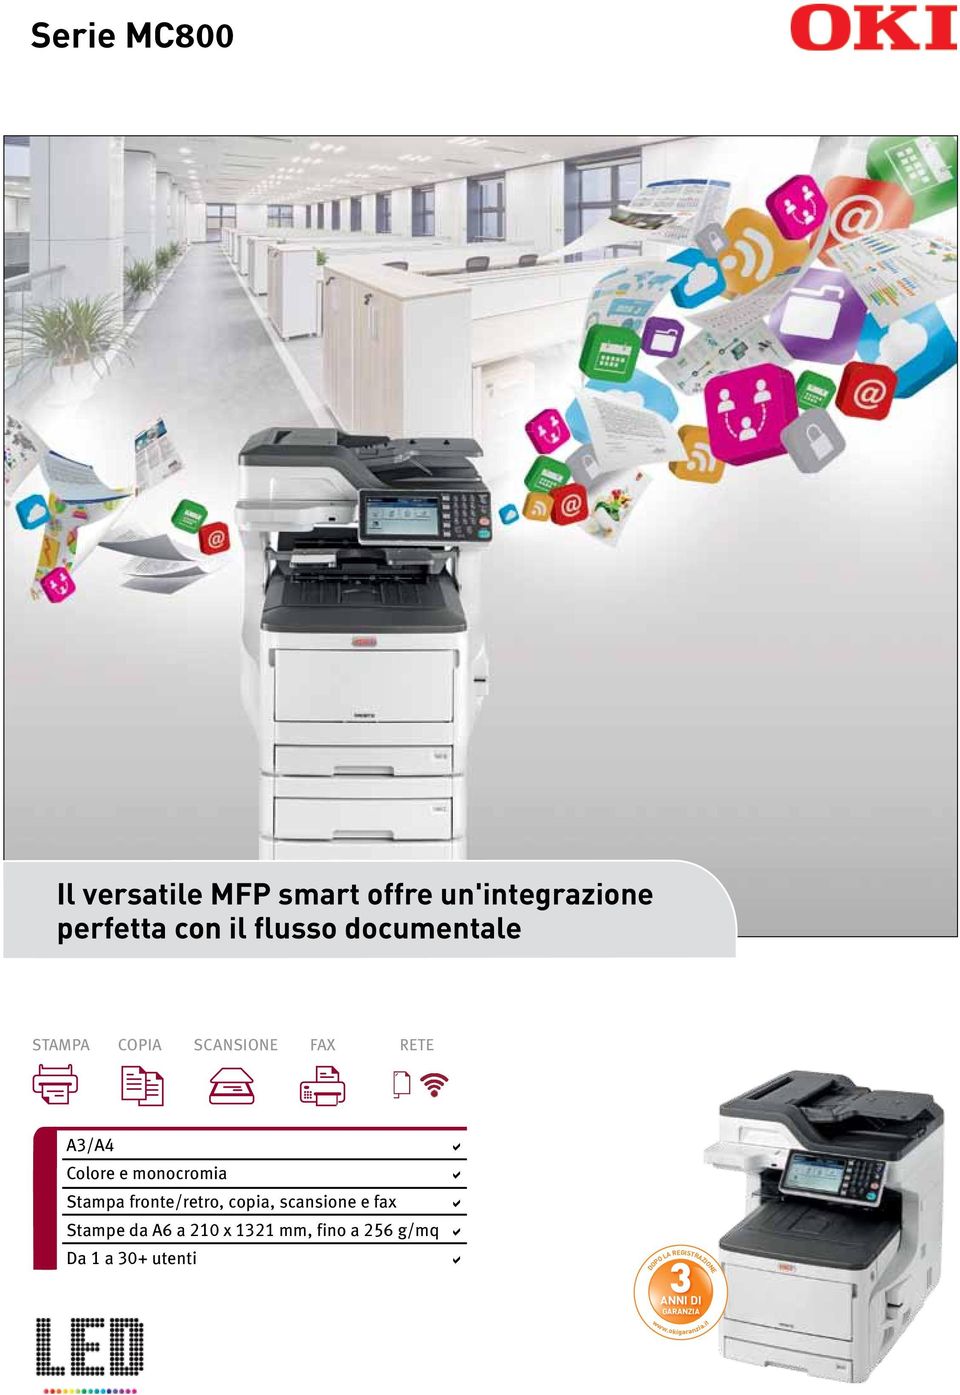 fronte/retro, copia, scansione e fax a Stampe da A6 a 210 x 1321 mm, fino a 256